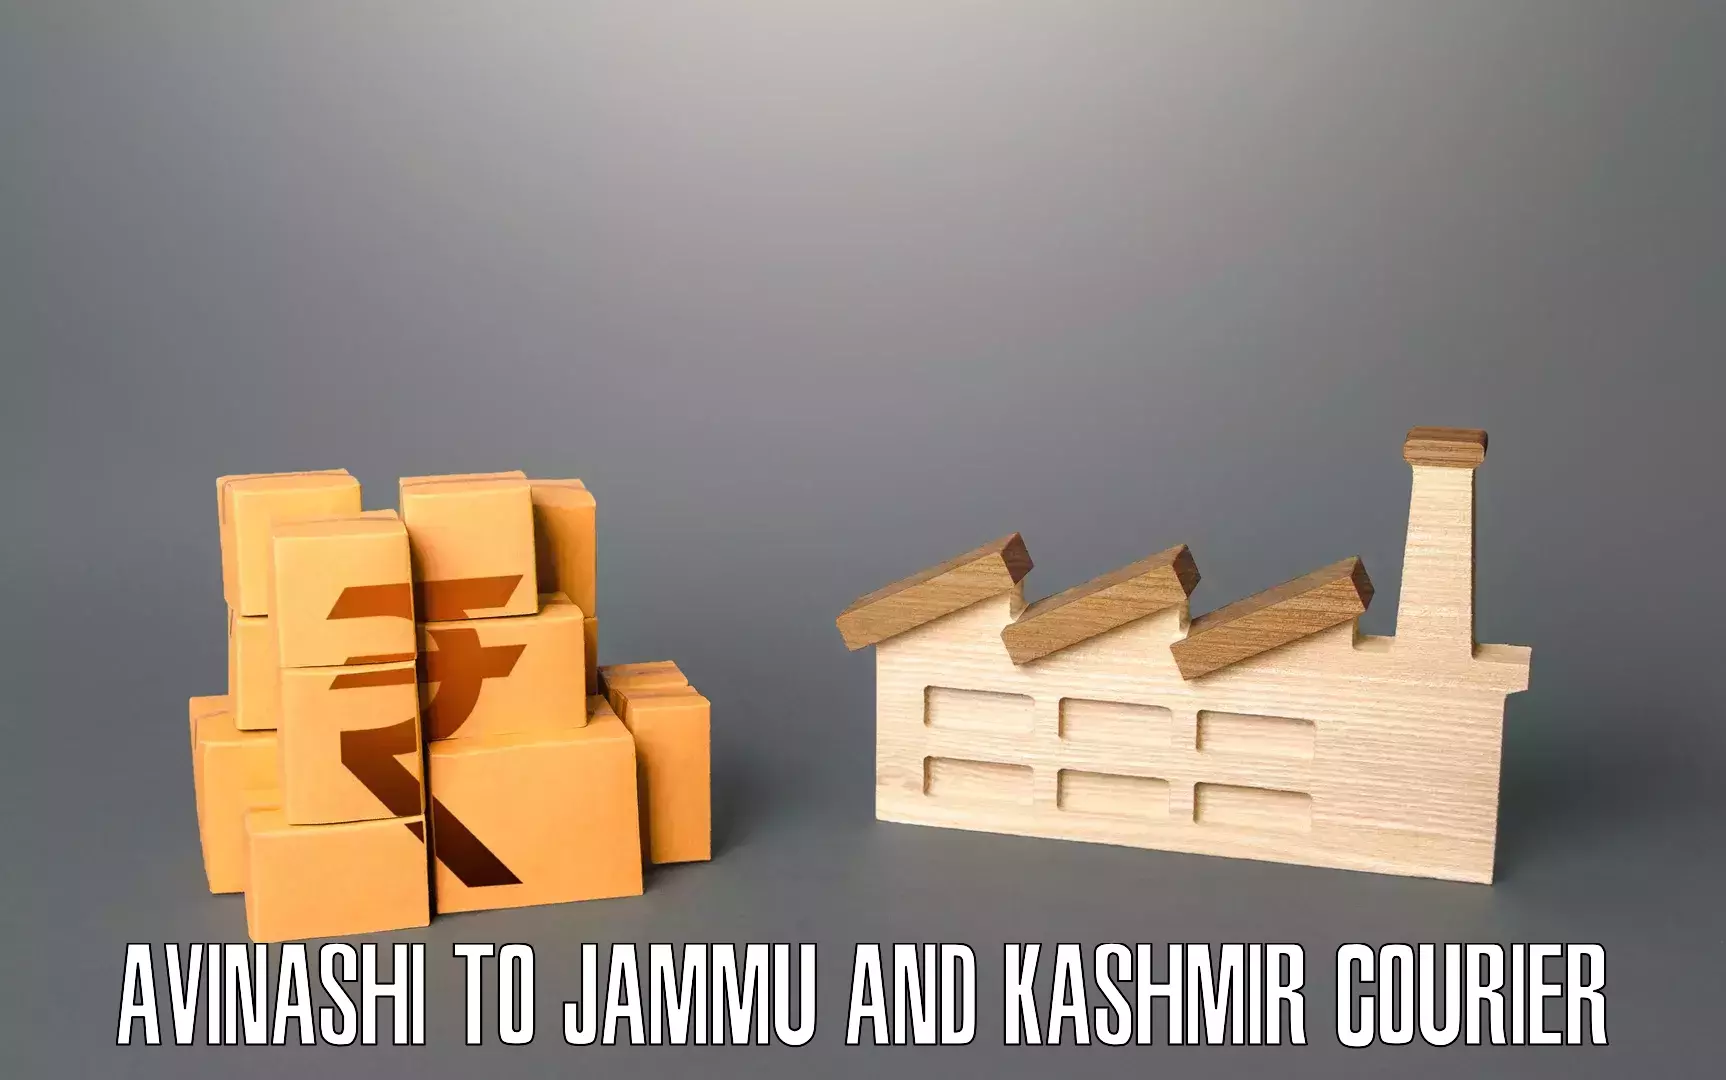 Furniture moving experts Avinashi to University of Jammu